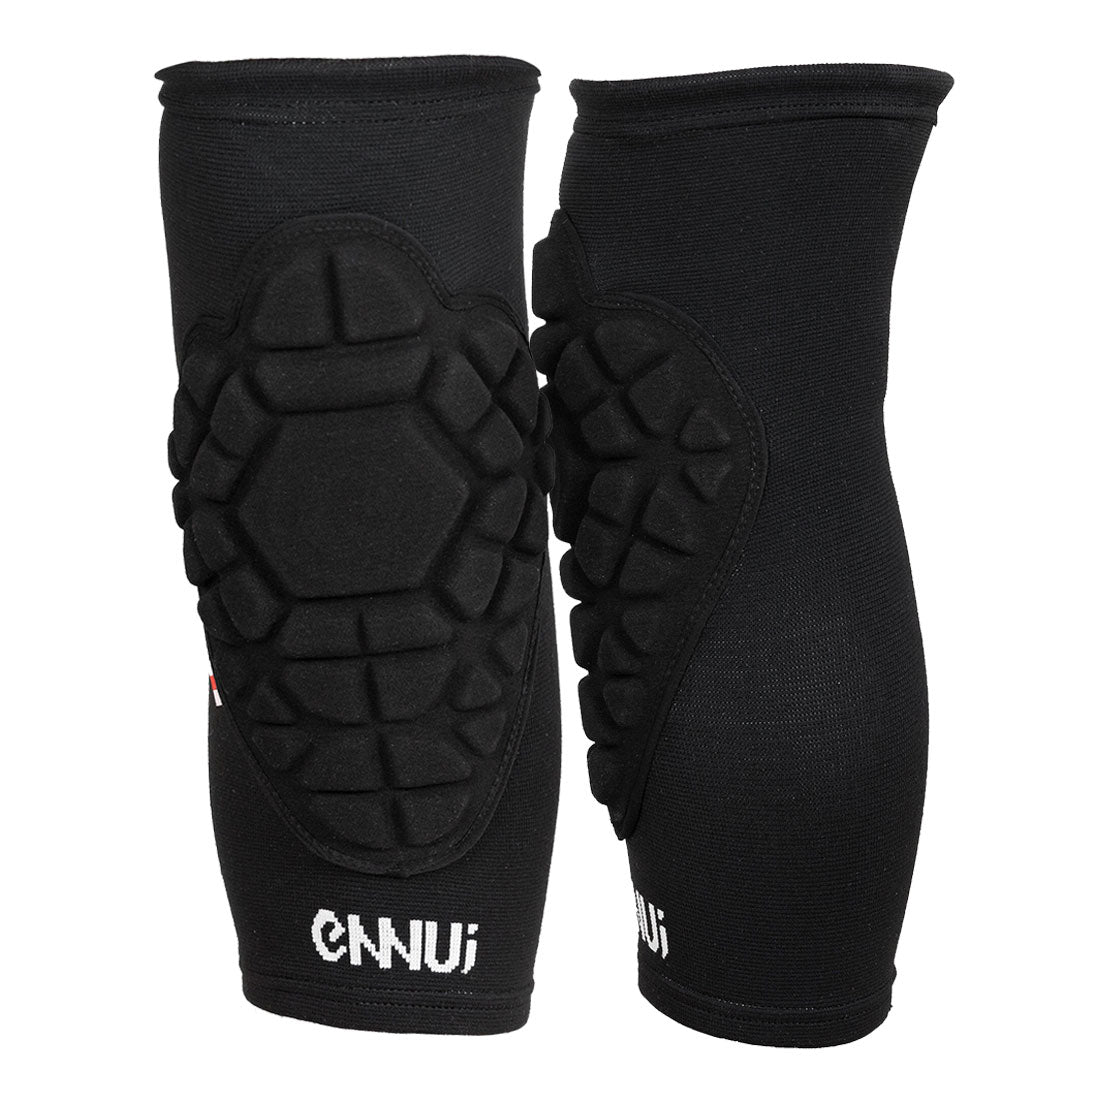 Ennui Shock Sleeve PRO Knee Gasket Protective Gear